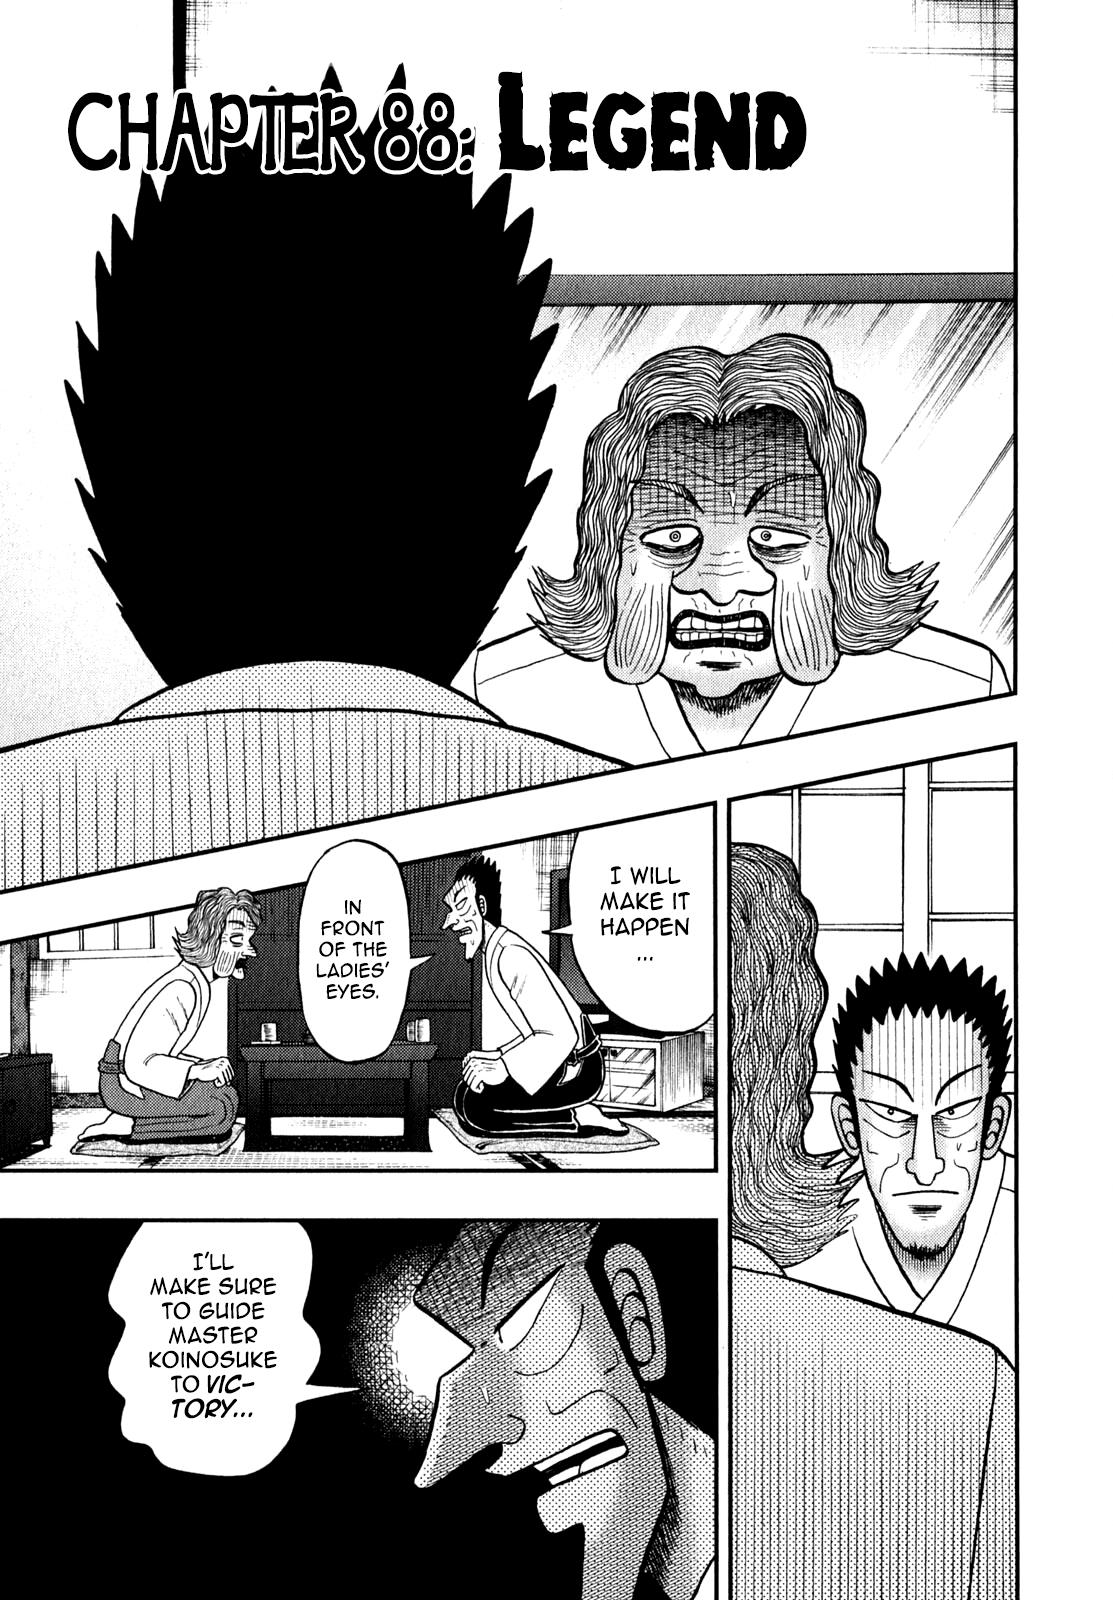 The New Kurosawa - Page 1